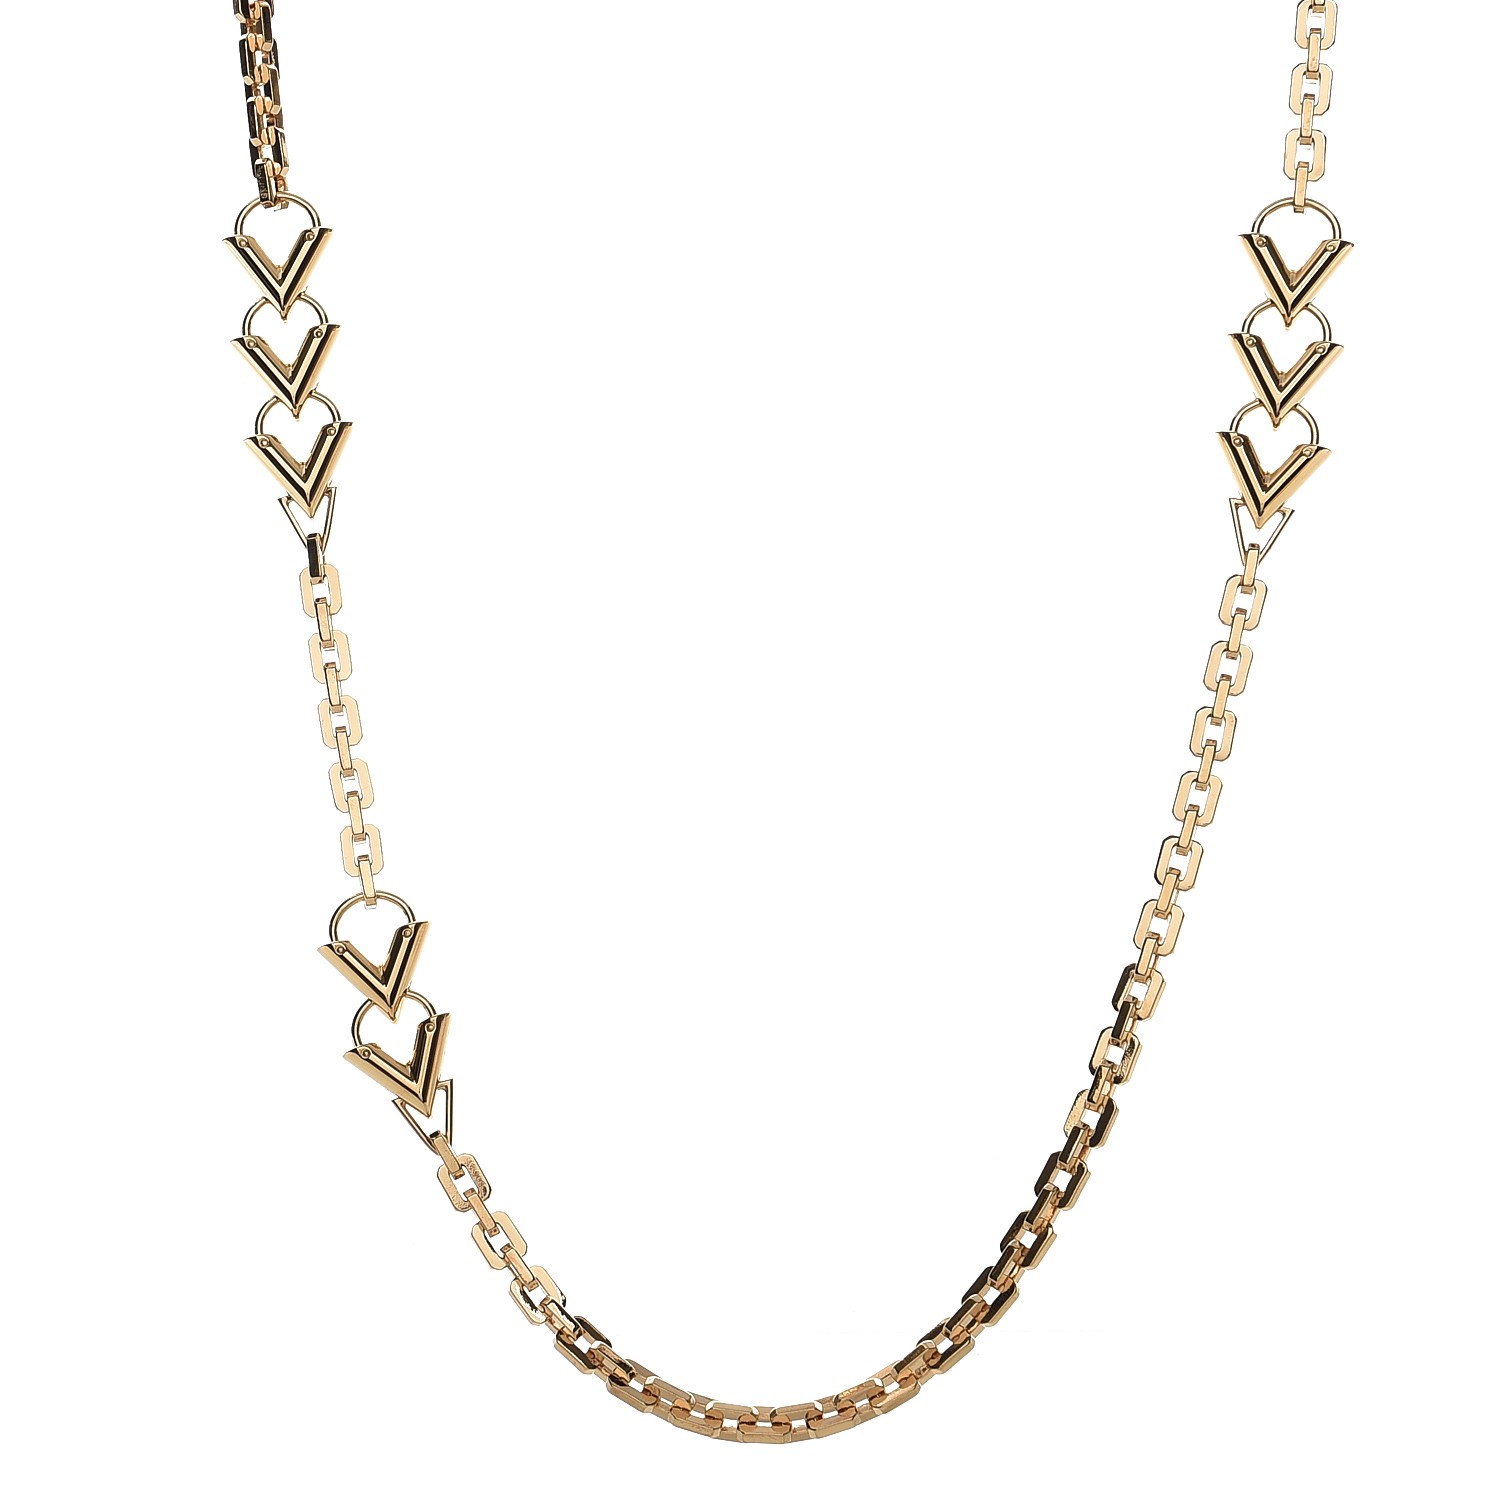 The MK » Lv Chain Design Necklace